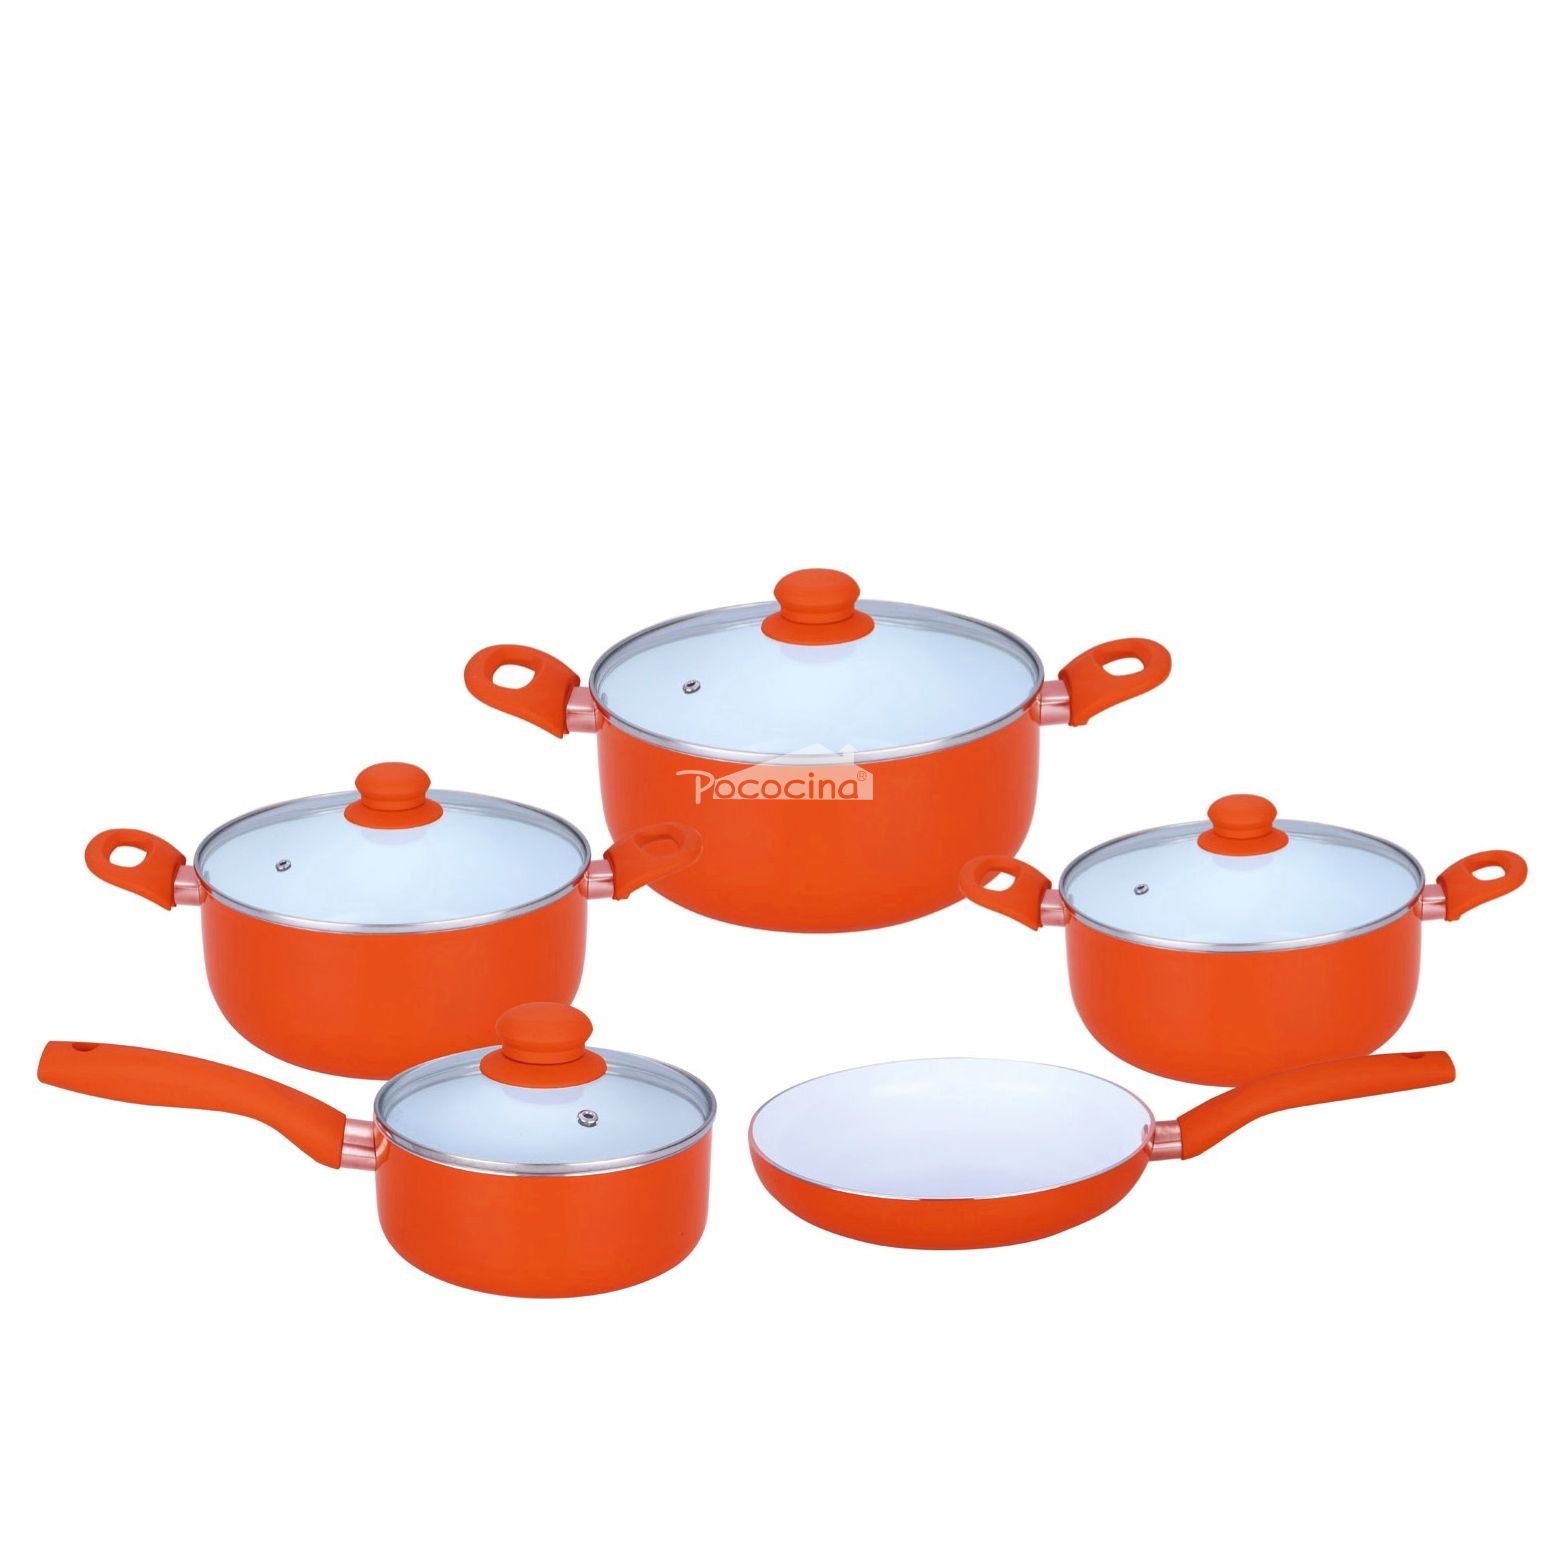 9pcs pressing aluminum cookware non-stick coating Ceramic  stir-frying wok and frying pan set